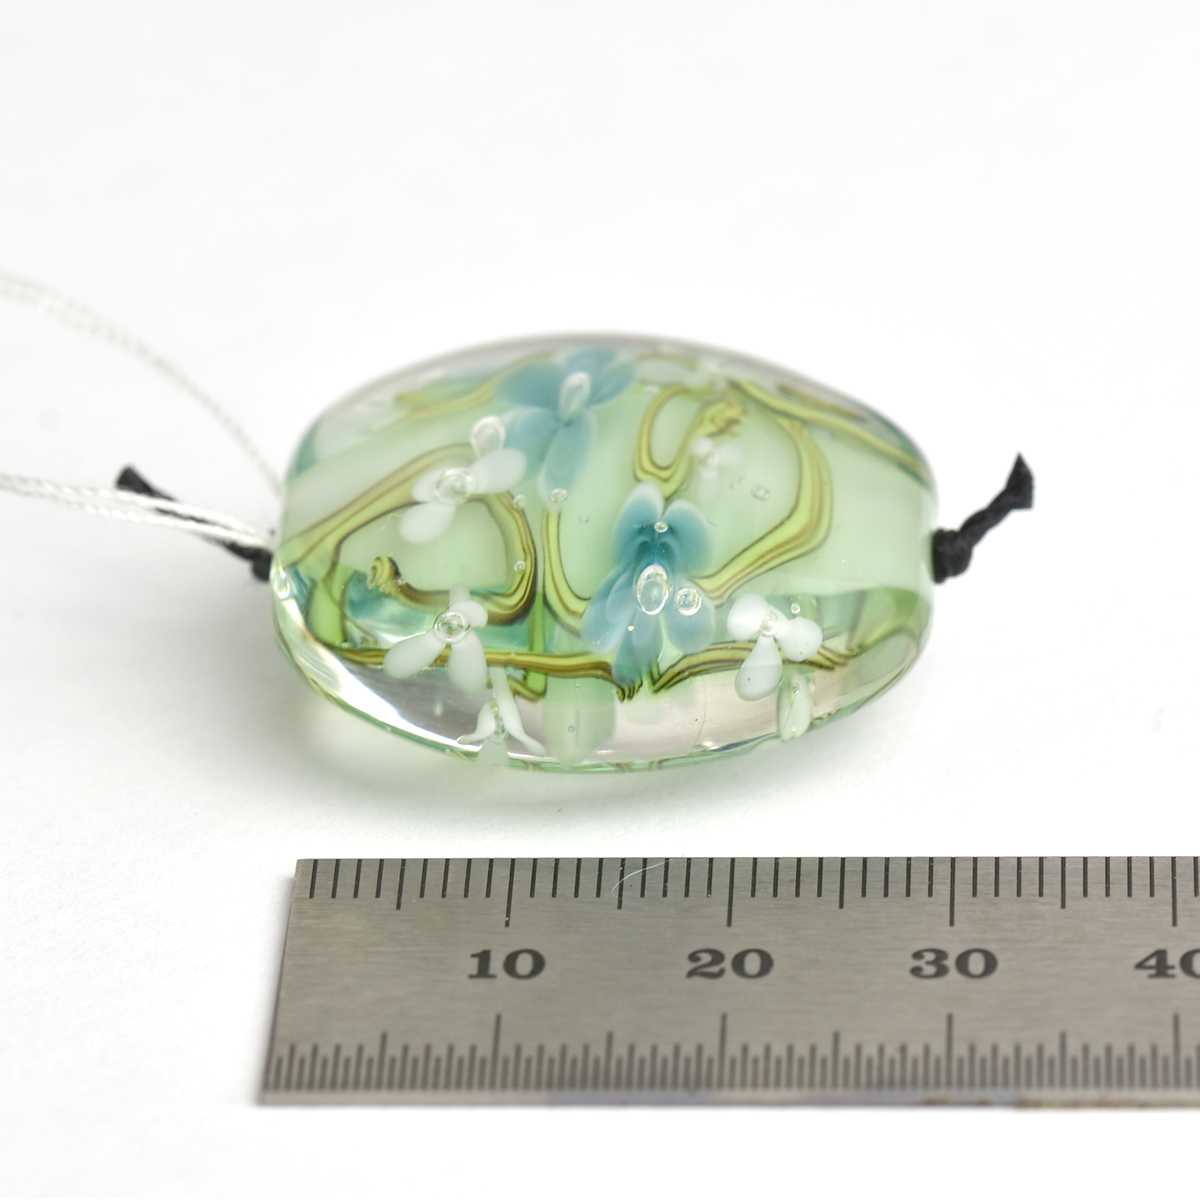 Perle de verre lentille verte et bleue  🖤 Fabrication française 🖤